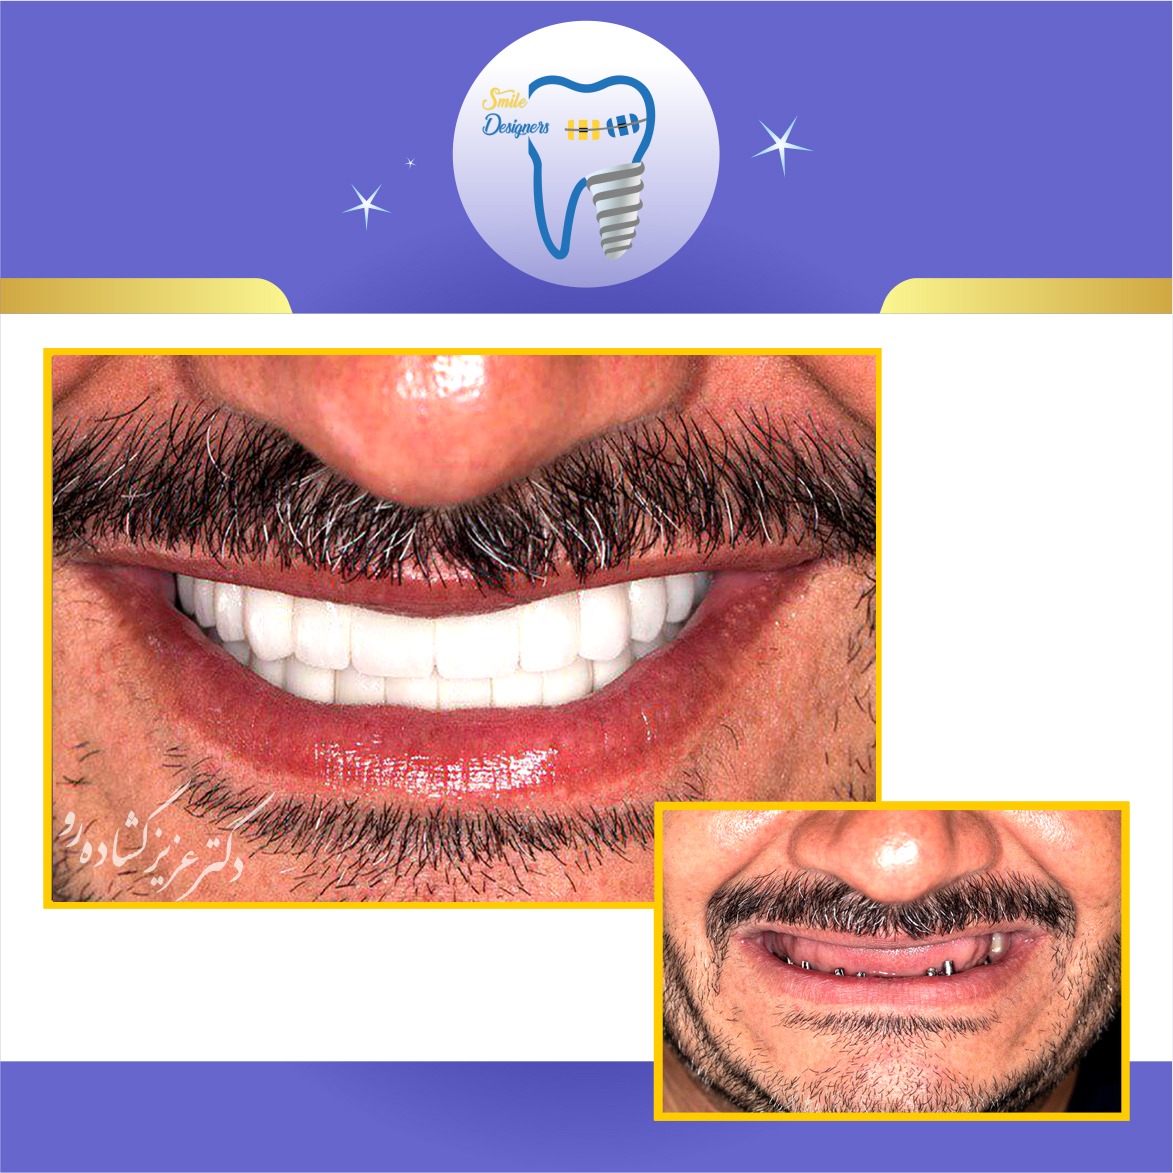 درمان ایمپلنت دندانها توسط متخصص ایمپلنت و پروتز در تهران( دکتر عزیز گشاده رو ، متخصص ایمپلنت و پروتز دندان ، استاد دانشگاه شهید بهشتی، رتبه اول بورد کشور)